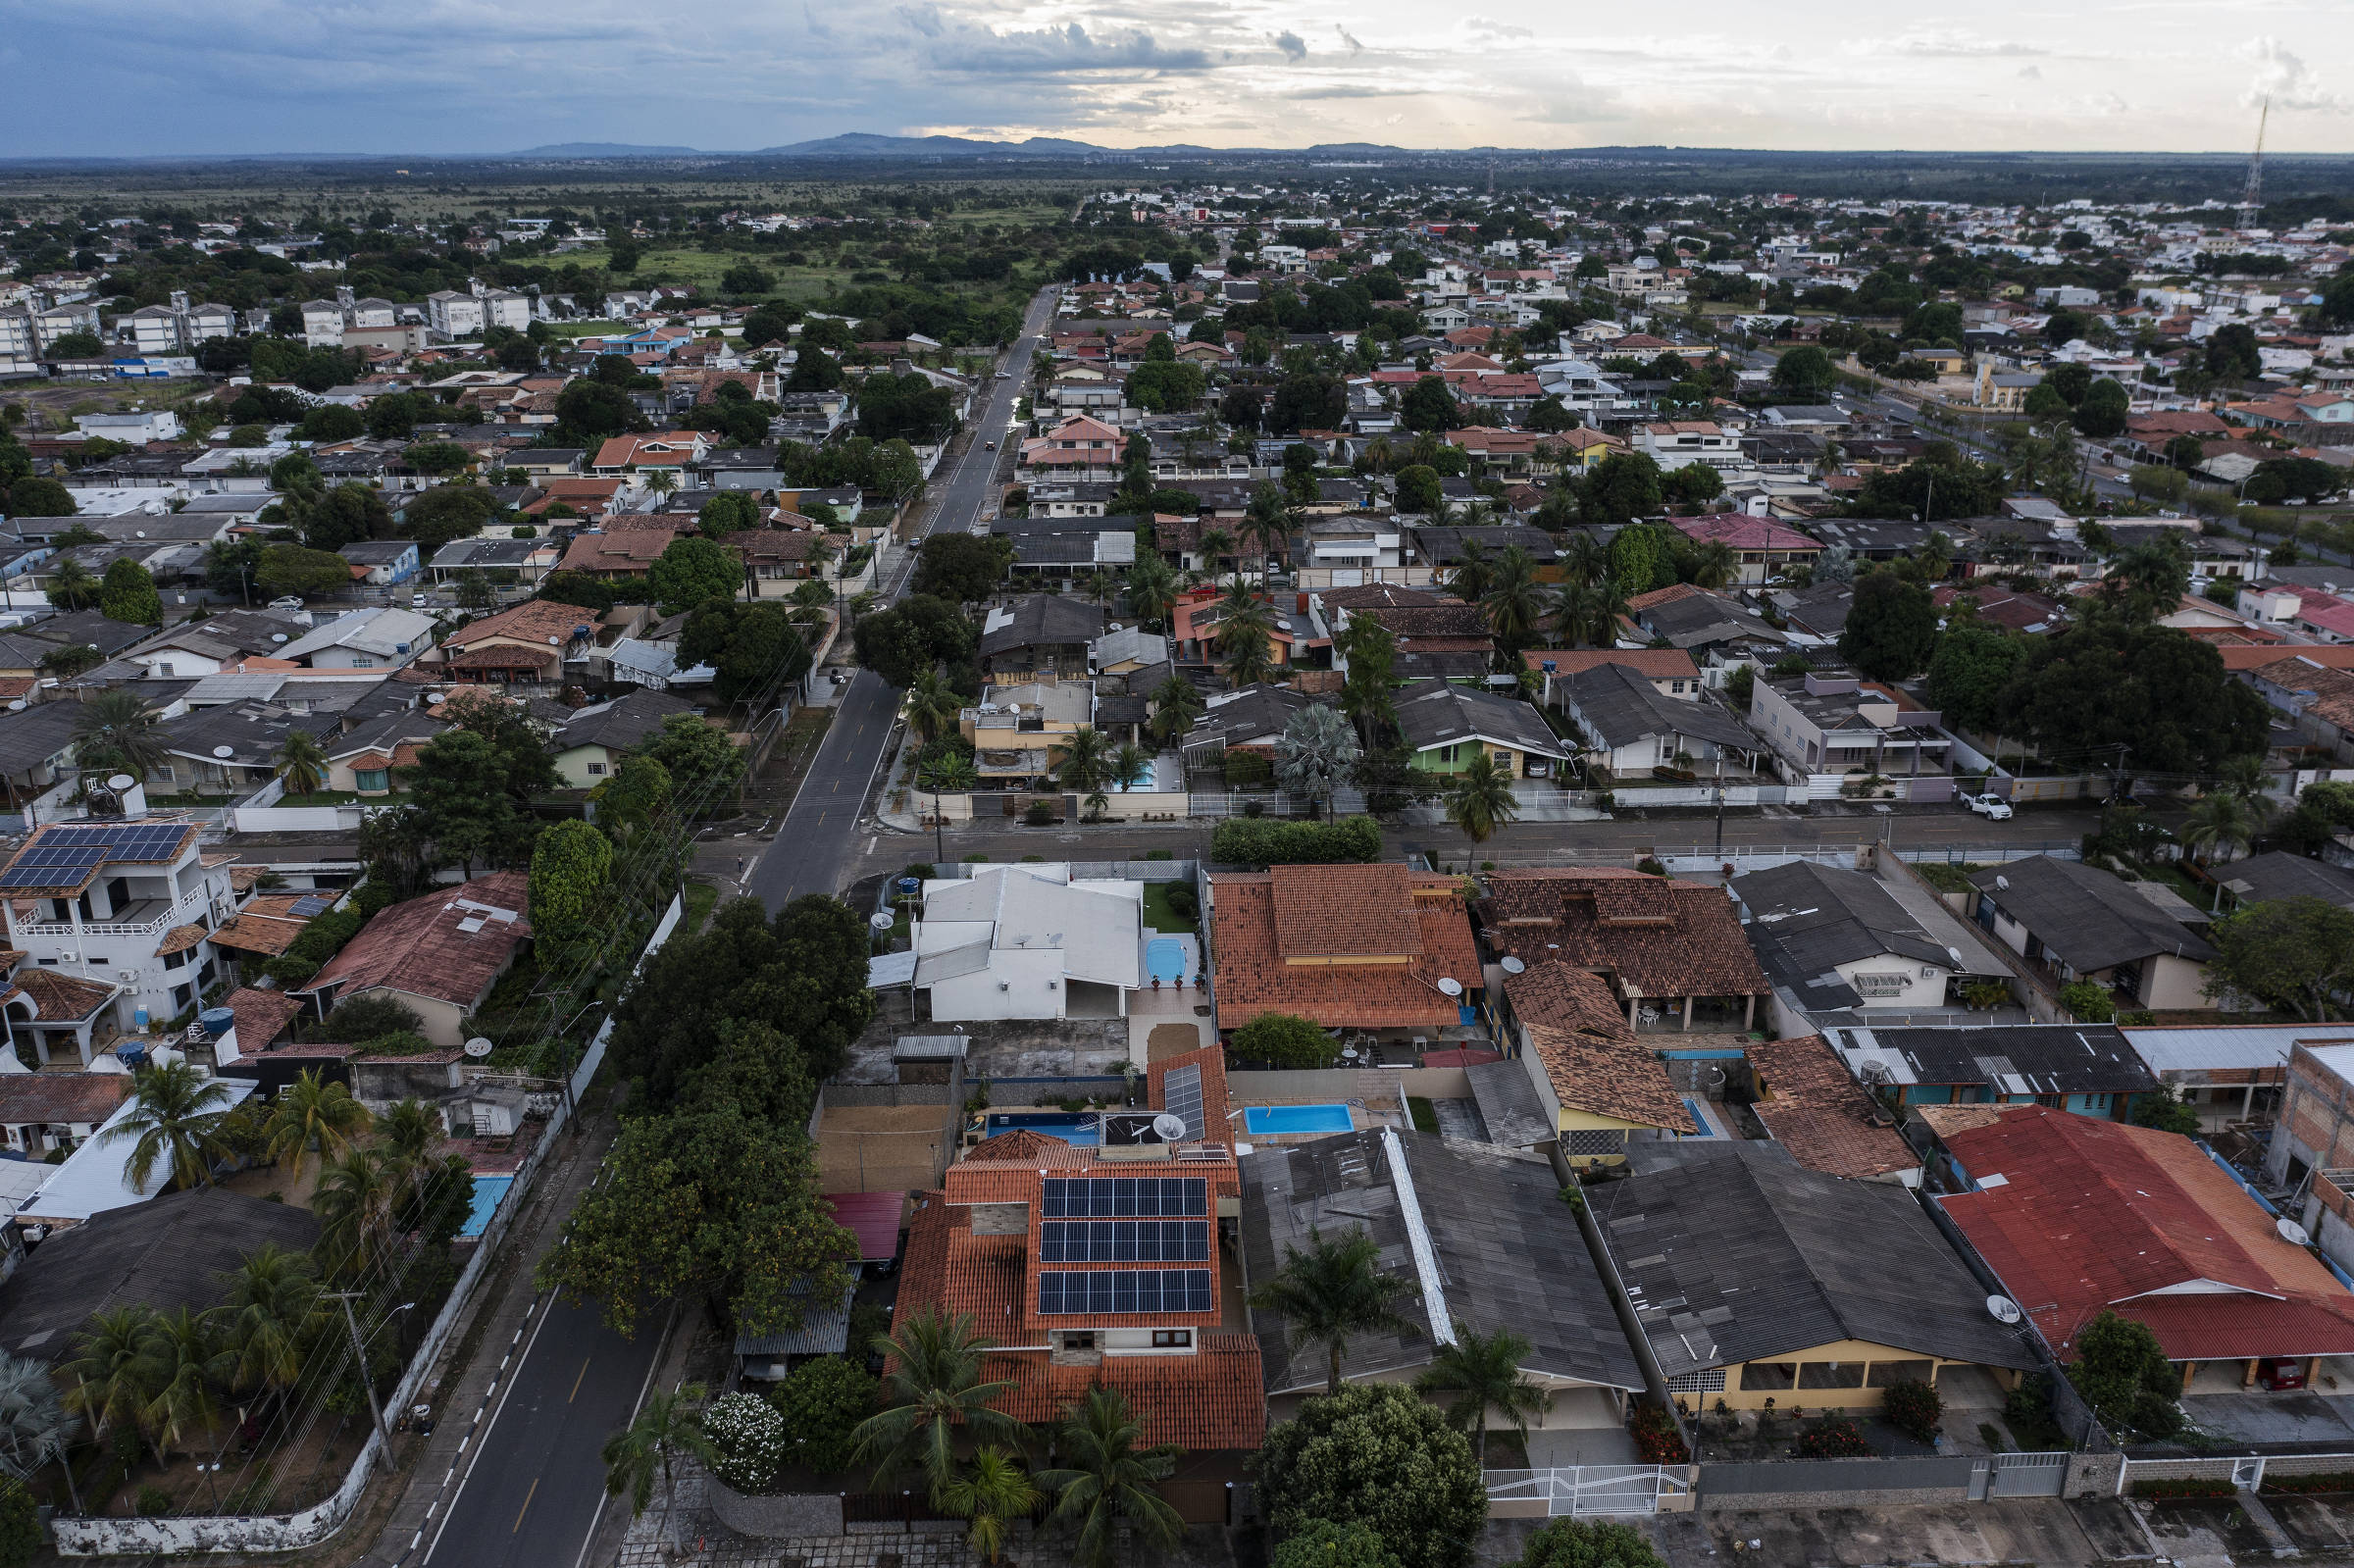 Rondônia passa de 1,8 milhão de habitantes, aponta estimativa do IBGE, Rondônia